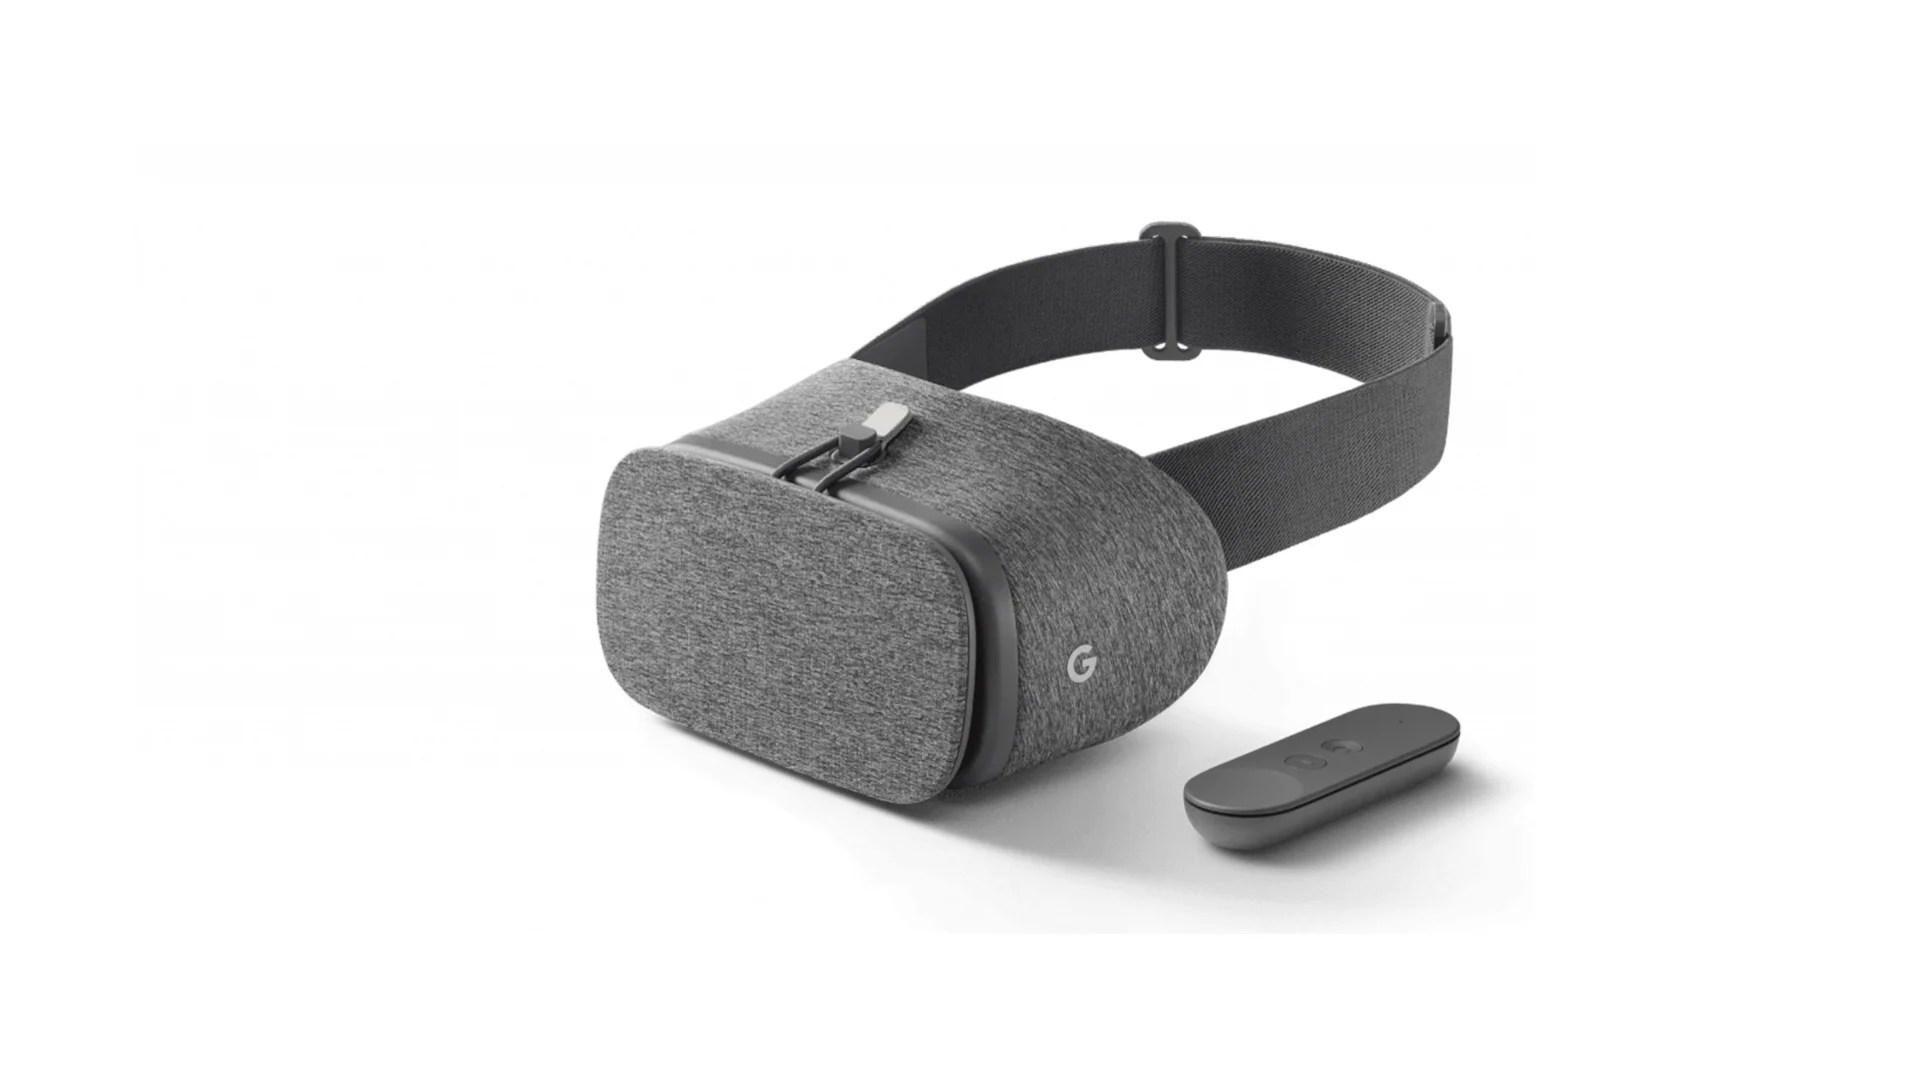 Google prépare un casque de réalité augmentée face à Meta et Apple